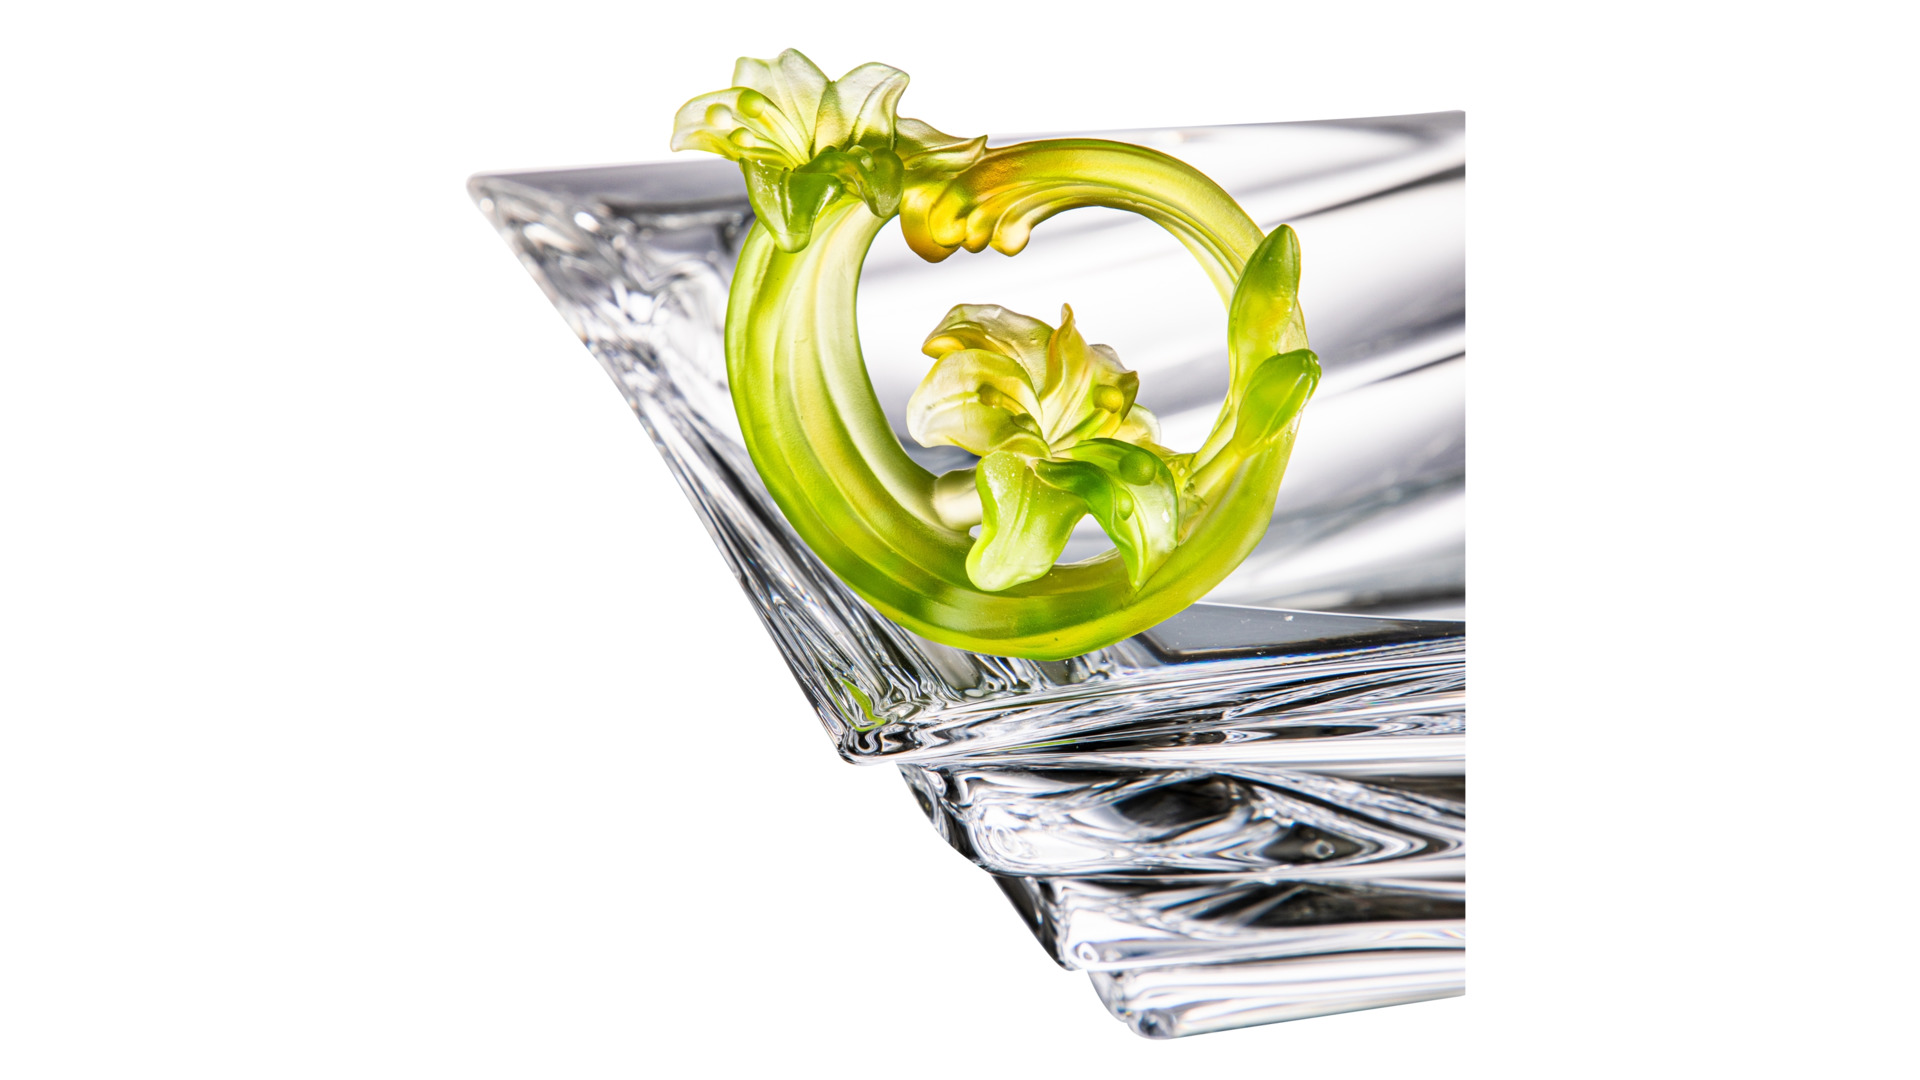 Чаша Cristal de Paris Миллениум 28 см, декор с зеленым цветком